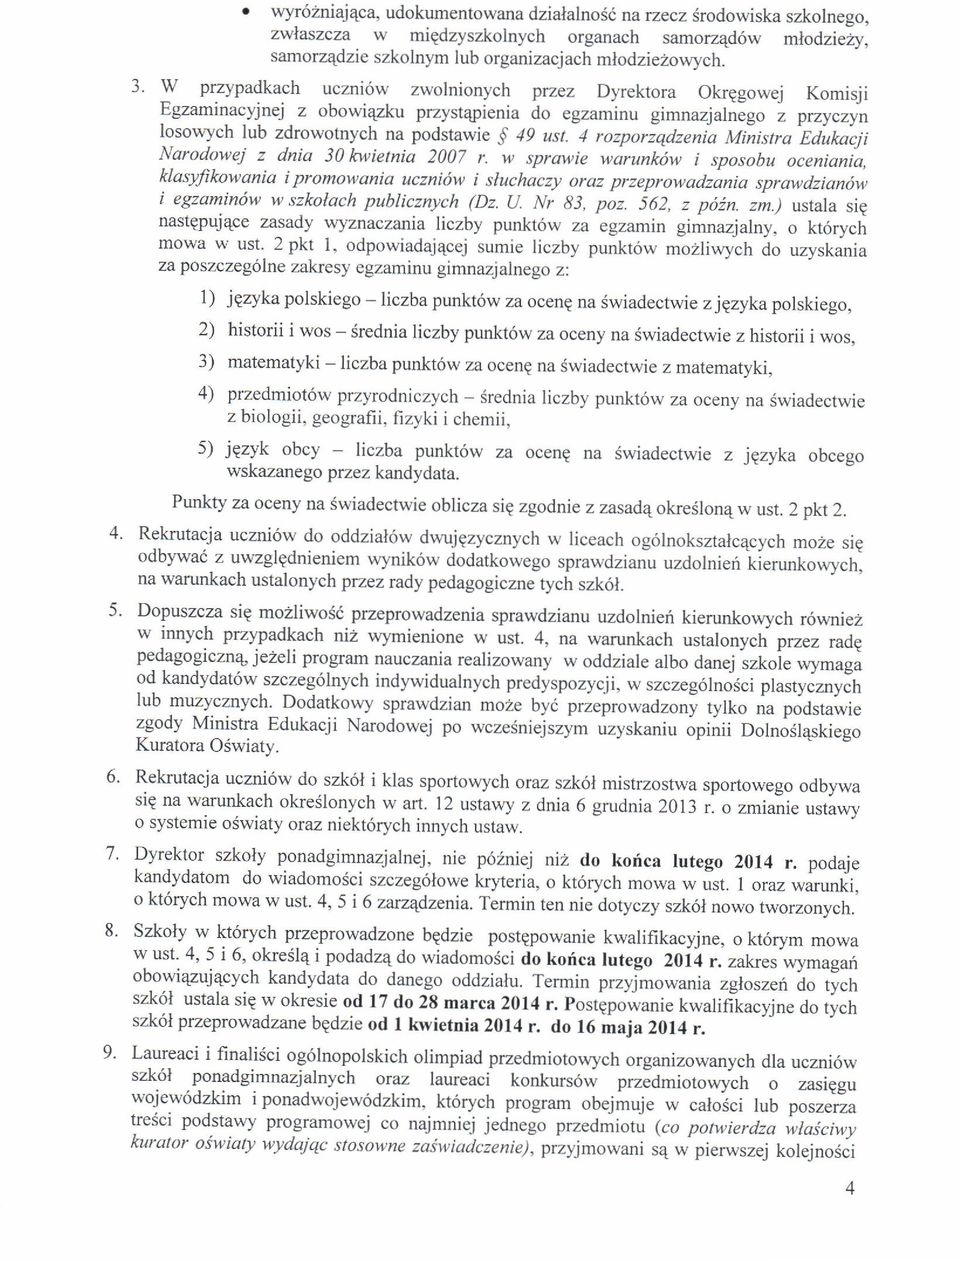 4 rozporzqdzenia Miistra^Edukacji Narodowej z dnia 30 lcwietnia 2007 r.